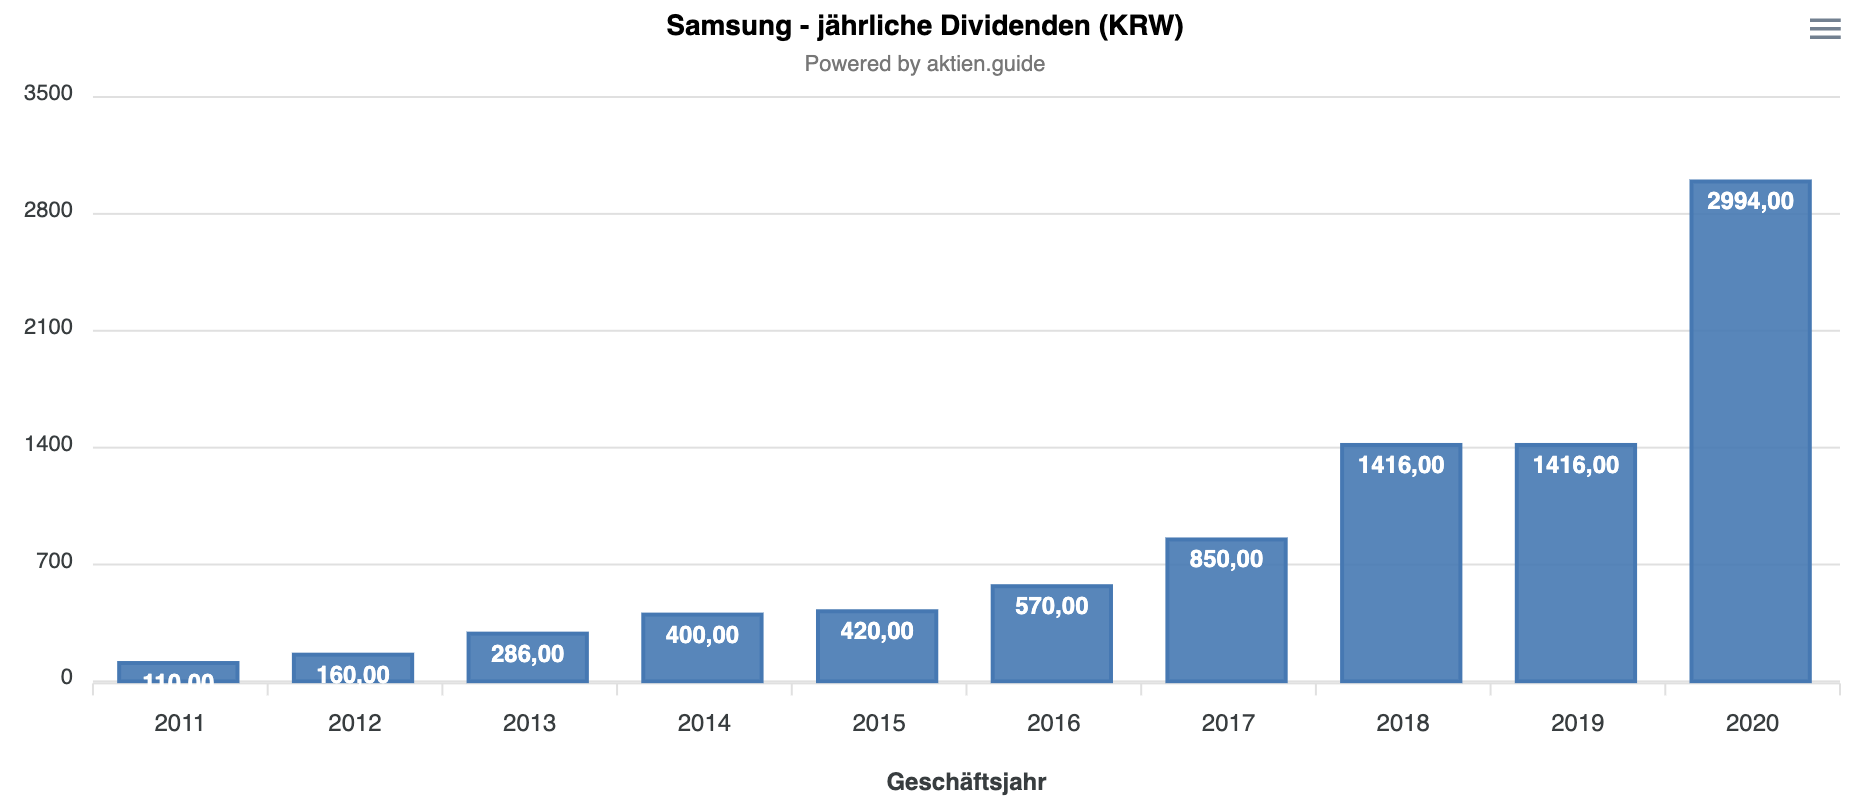 Samsung Aktie Dividendenhistorie 10 Jahre